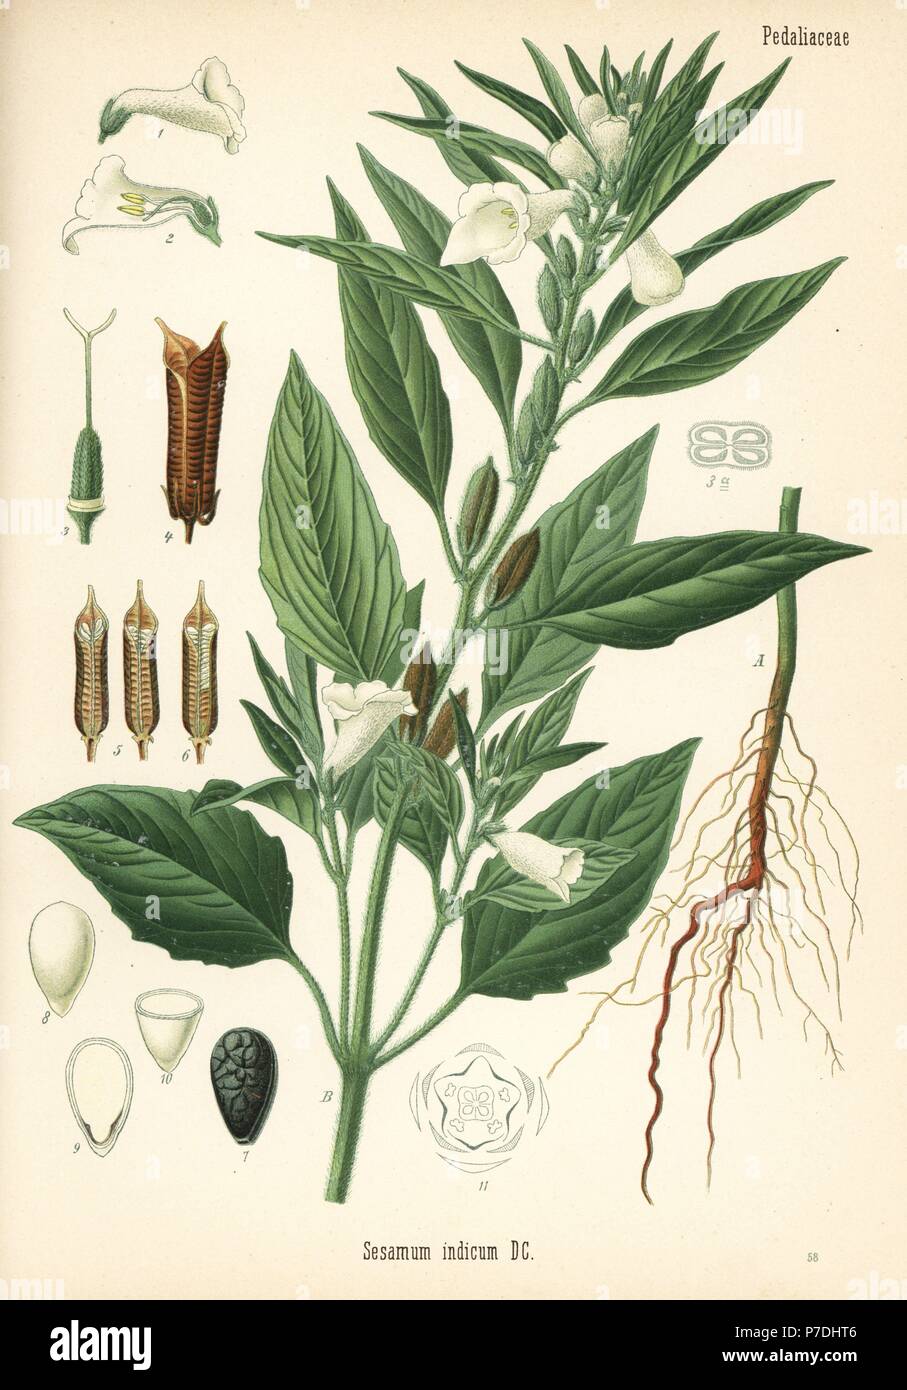 Sesam, gehören insbesondere Indicum. Chromolithograph nach einem botanischen Abbildung von Heilpflanzen Hermann Adolph von Koehler, von Gustav Pabst, Koehler, Deutschland, 1887 bearbeitet werden. Stockfoto